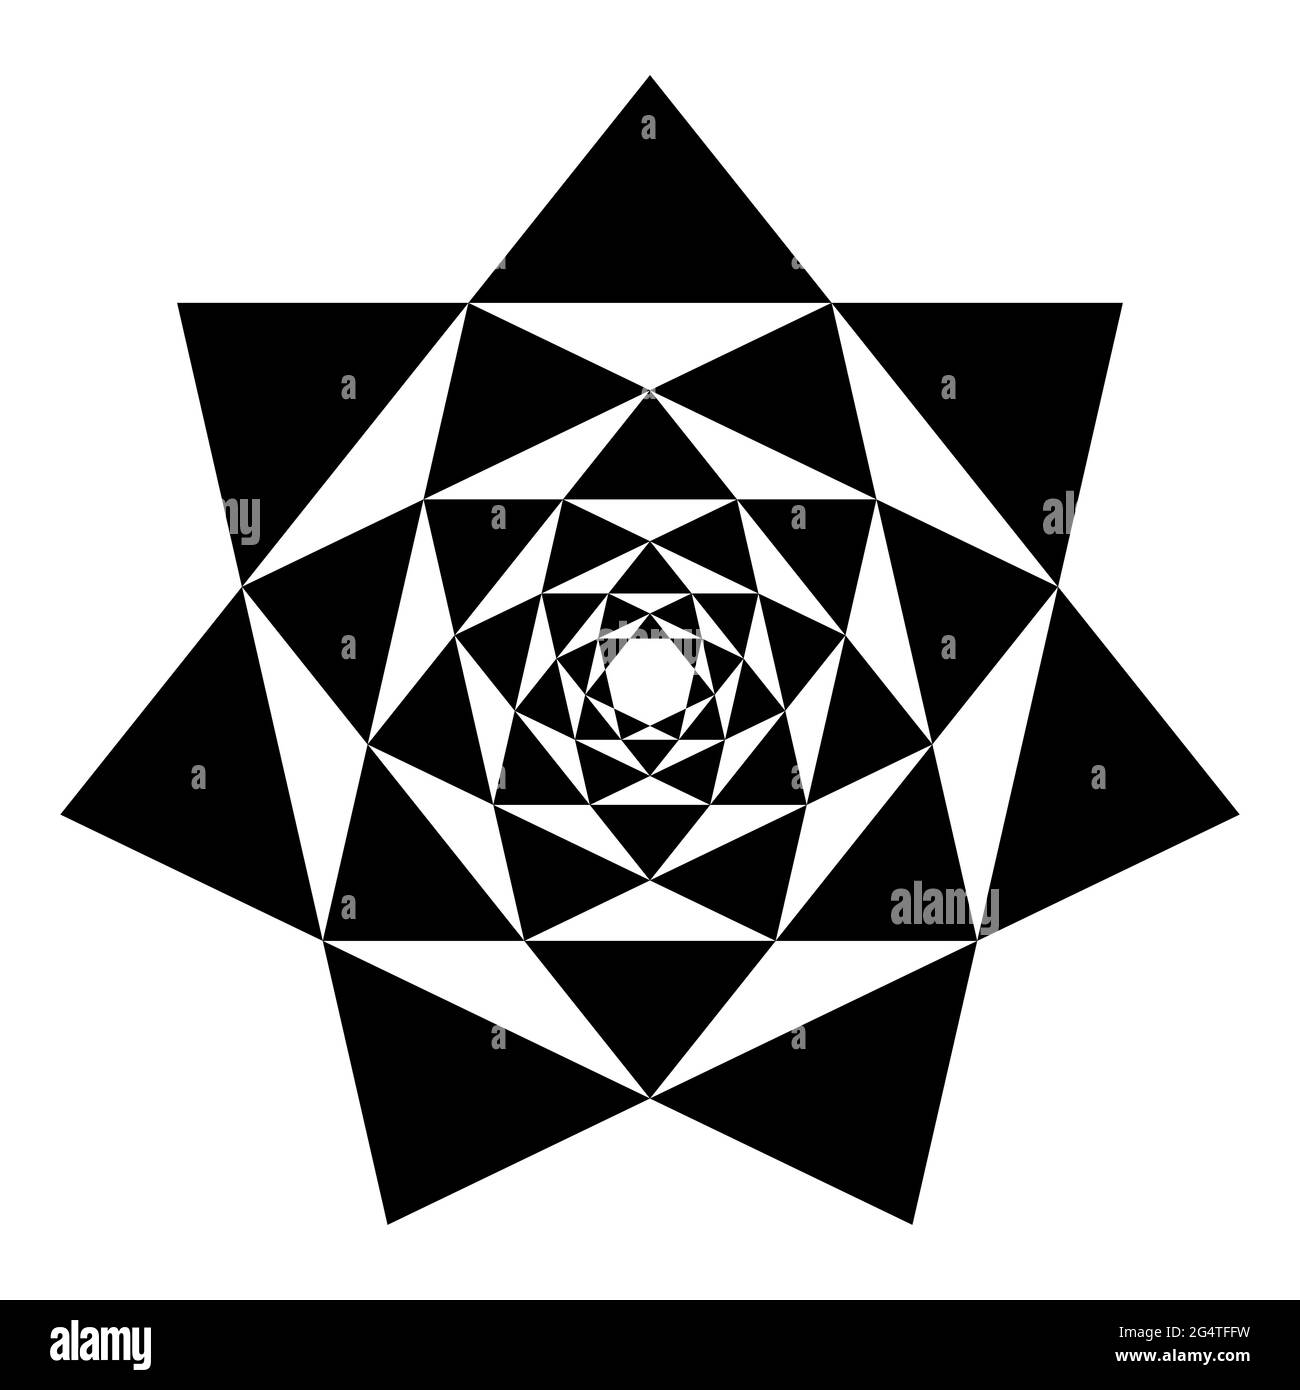 Heptagragramme in Heptagragrammen. Kreuzungspunkte von sieben Sternen mit sieben Spitzen, die einer in den anderen platziert ist, was gleichschenklige Dreiecke ergibt. Stockfoto